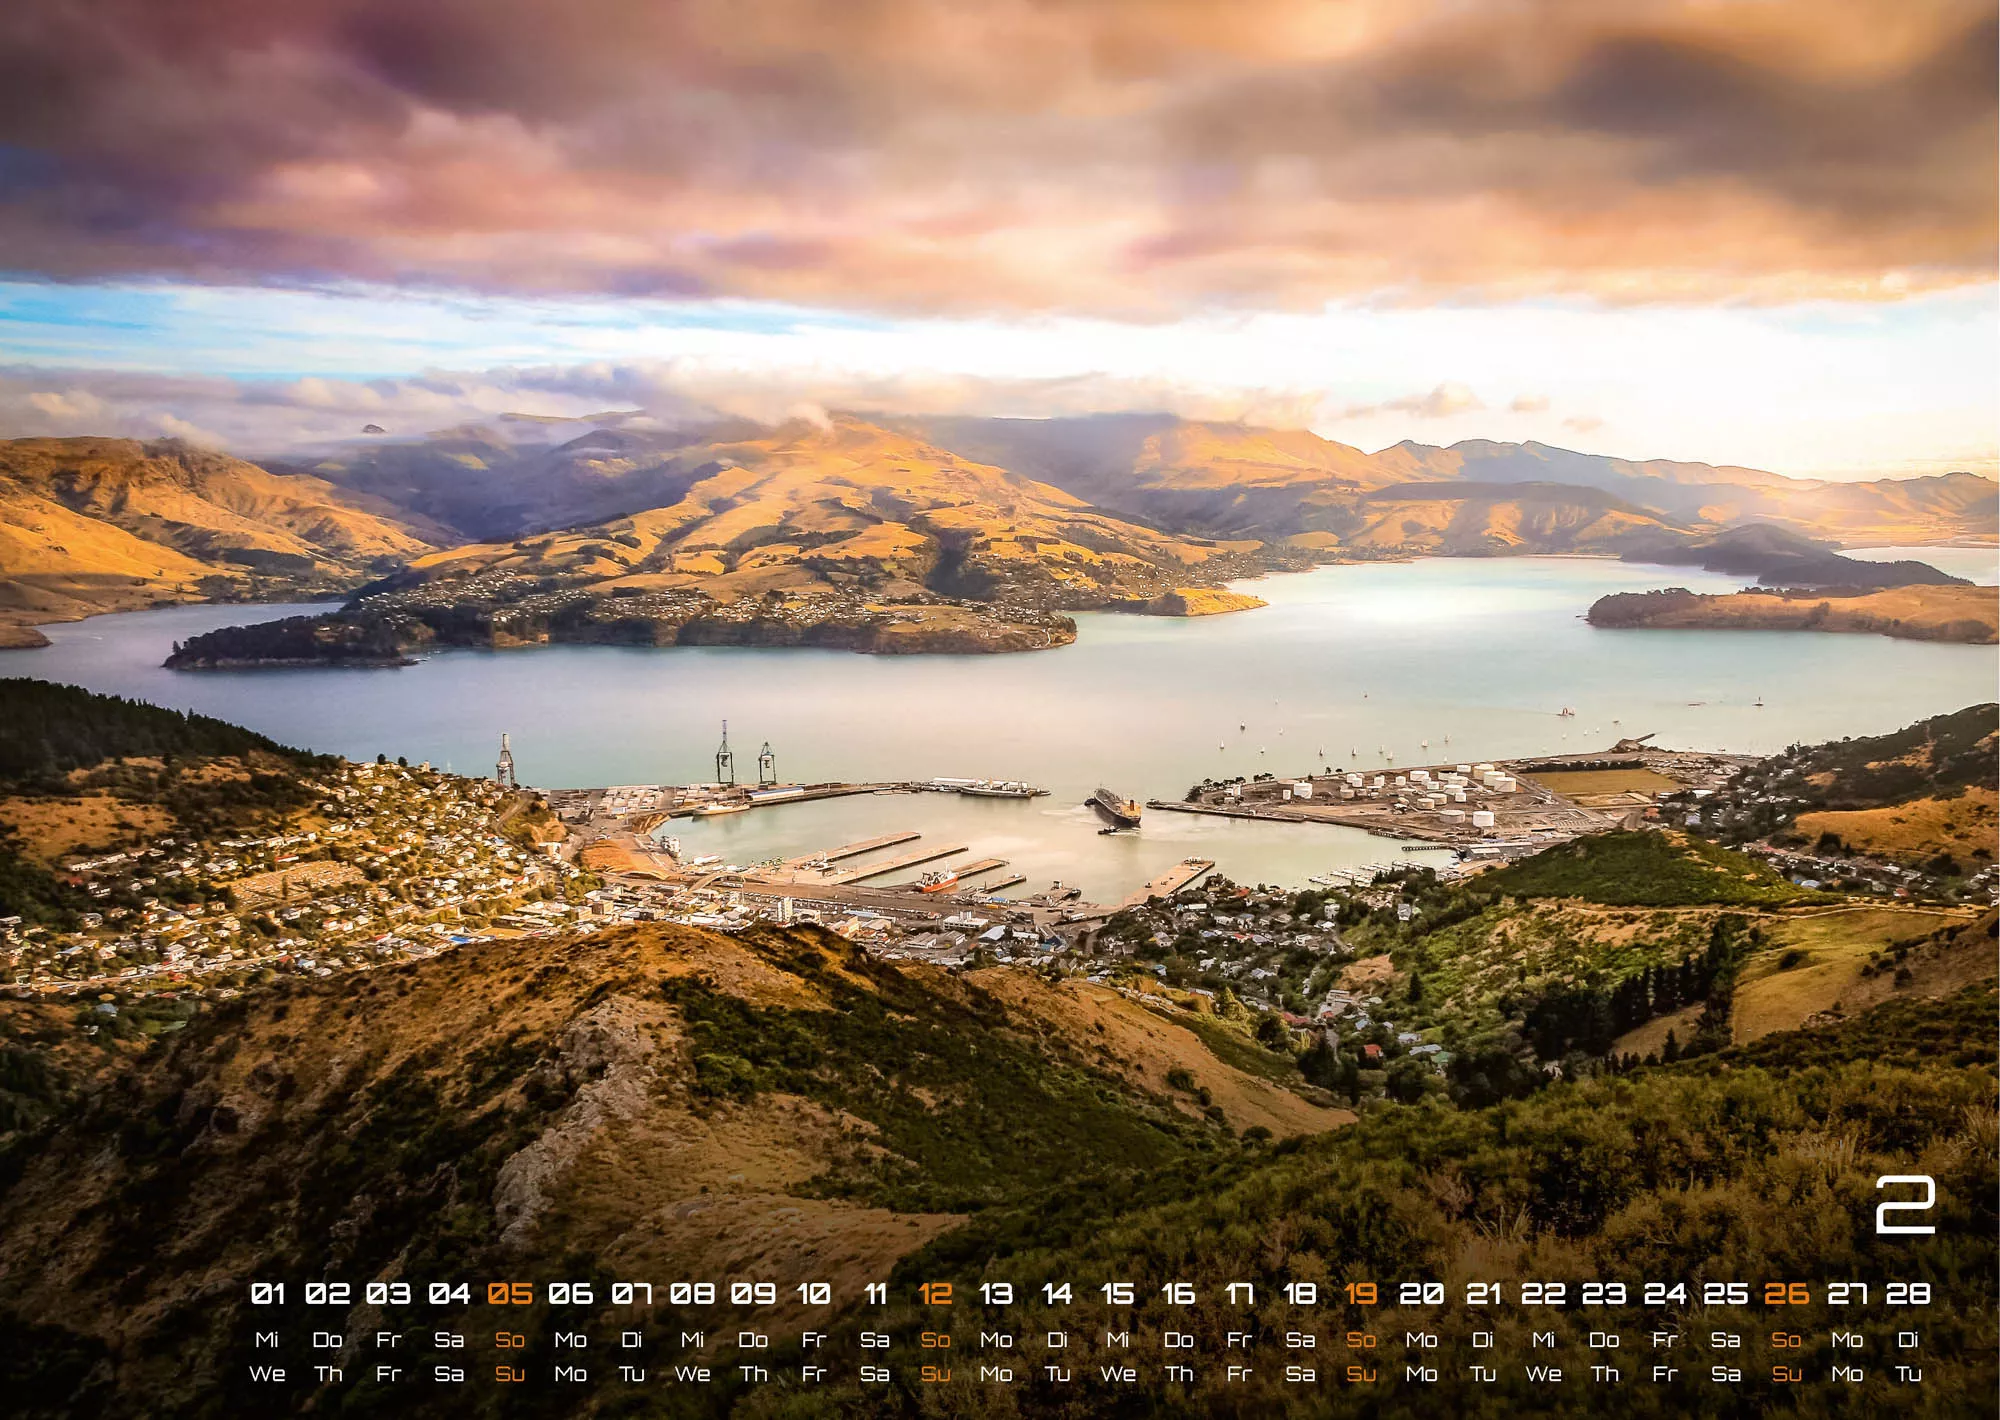 Neuseeland - Das Land der langen weißen Wolke - 2023 - Kalender